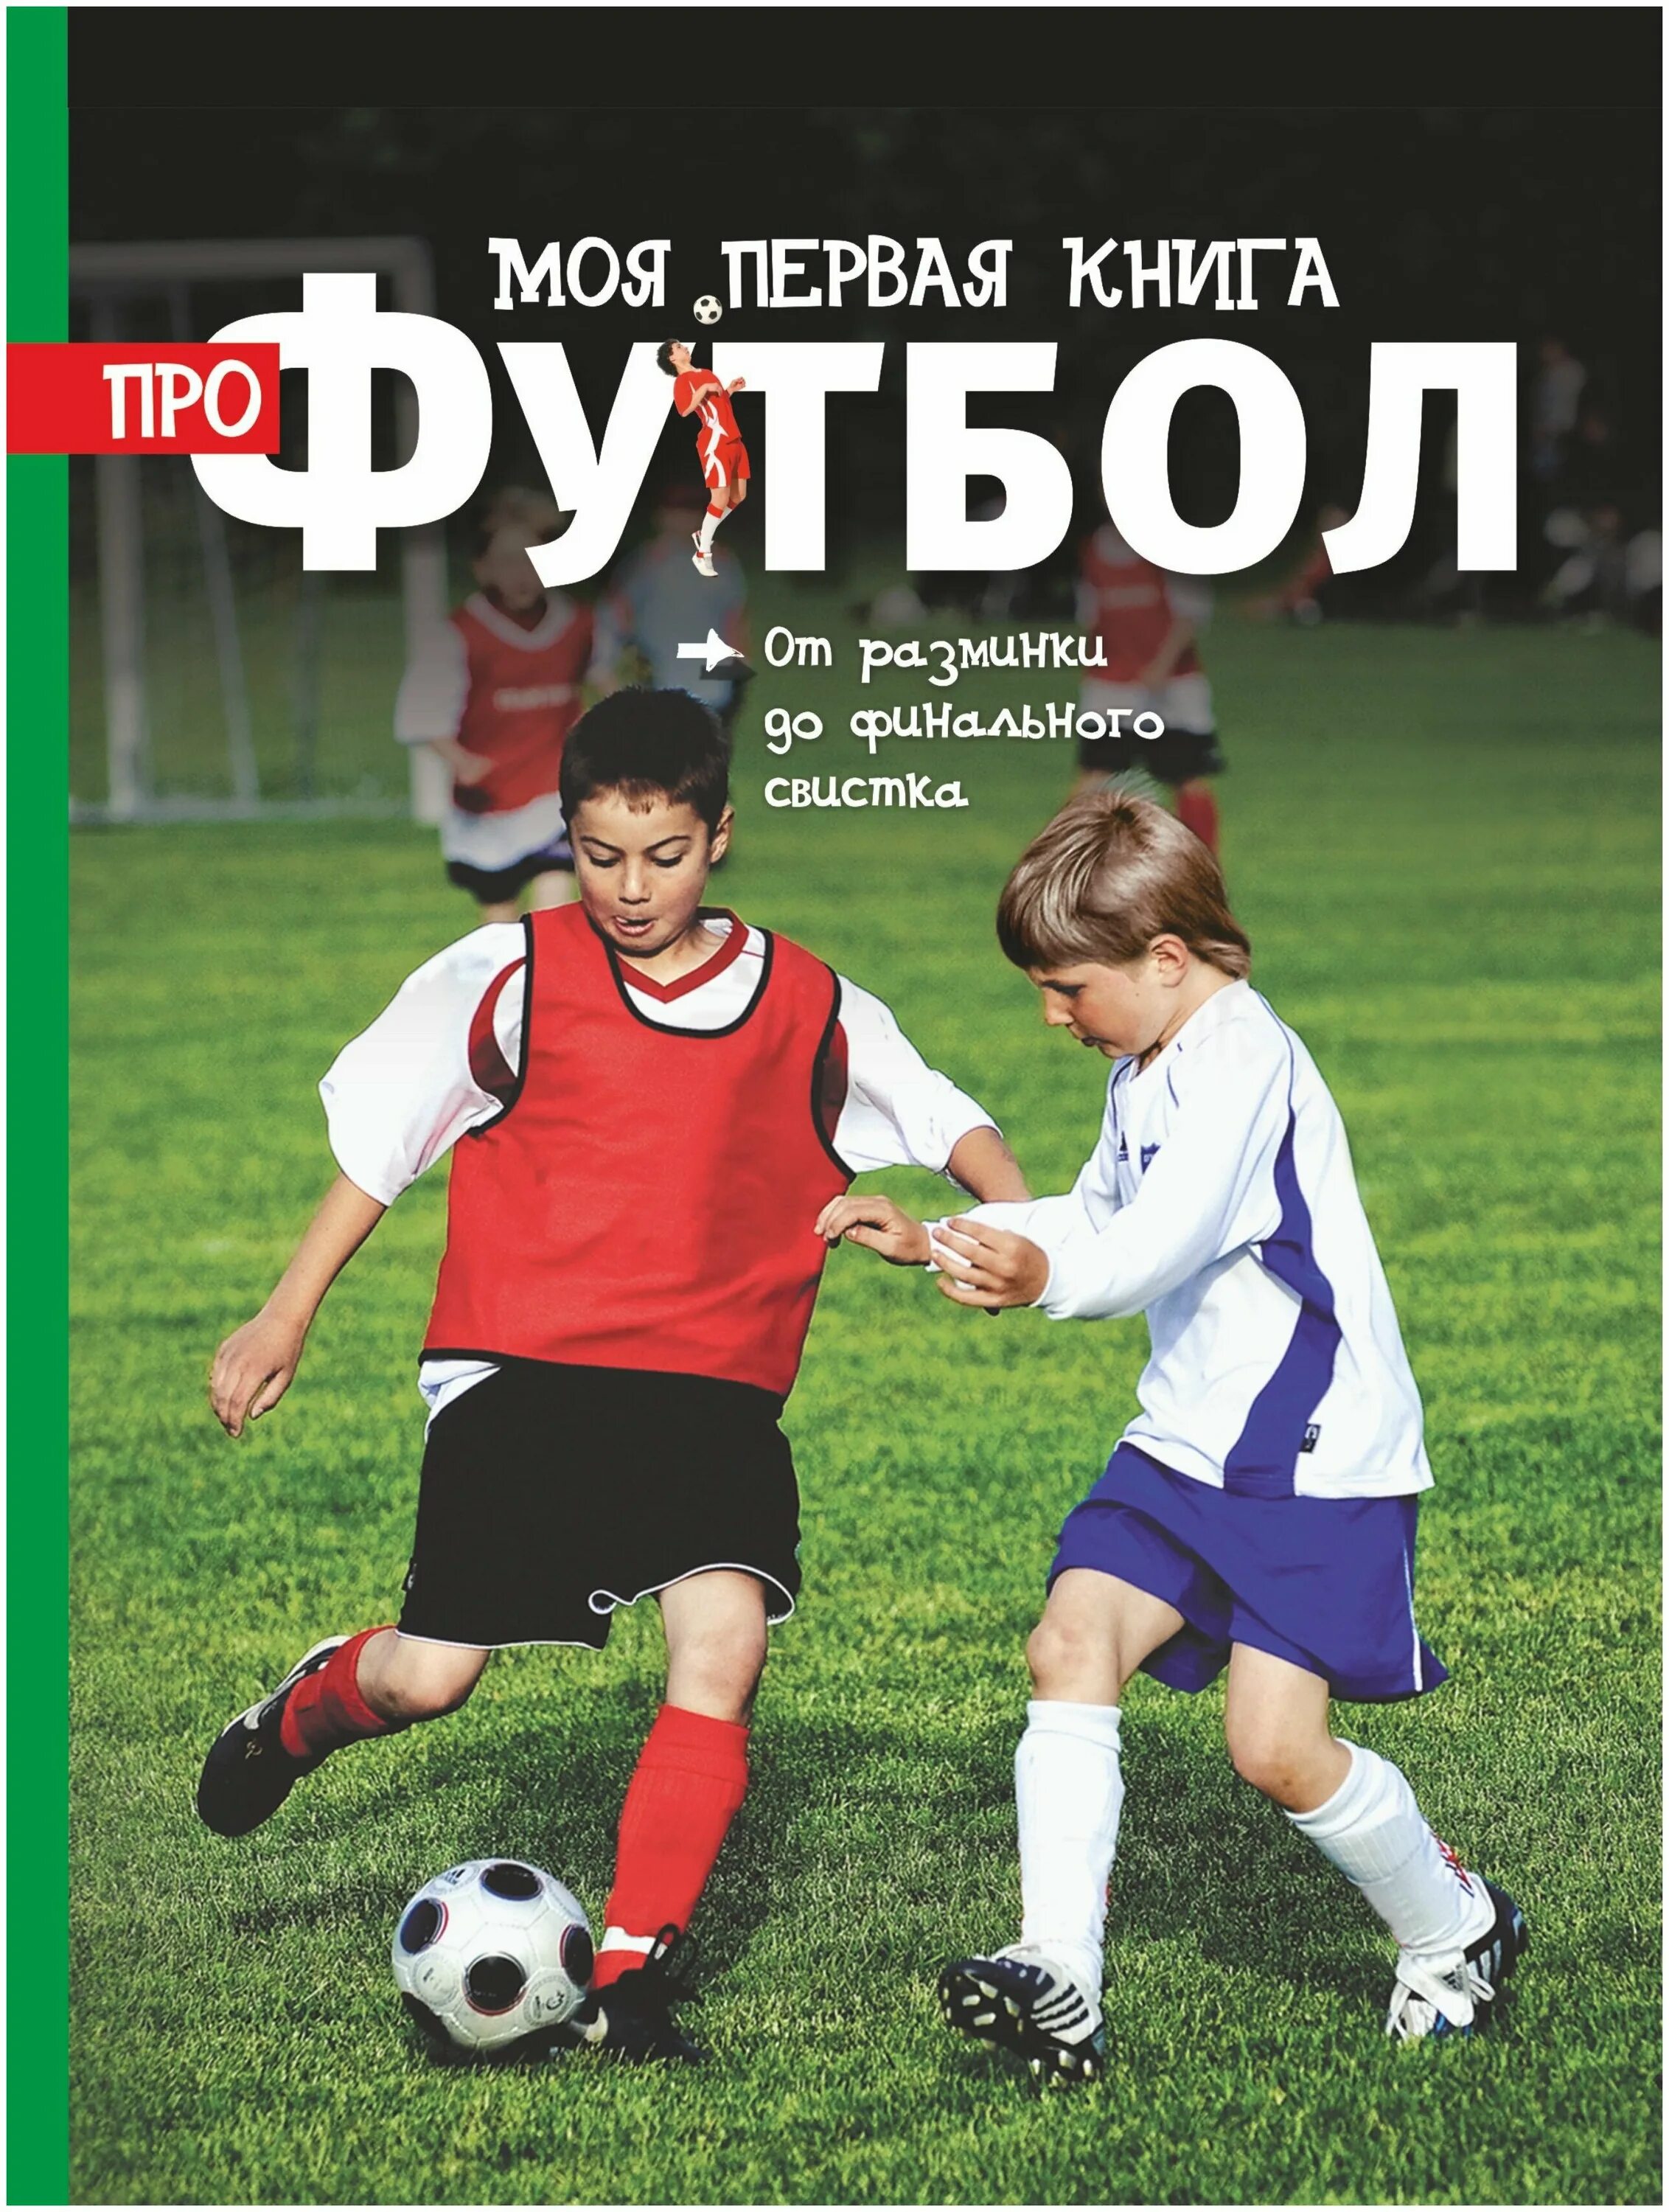 Клайв моя первая книга про футбол. Книги про футбол для детей. Книжки про футбол для детей. Книга по футболу для детей. Играйте в футбол книга